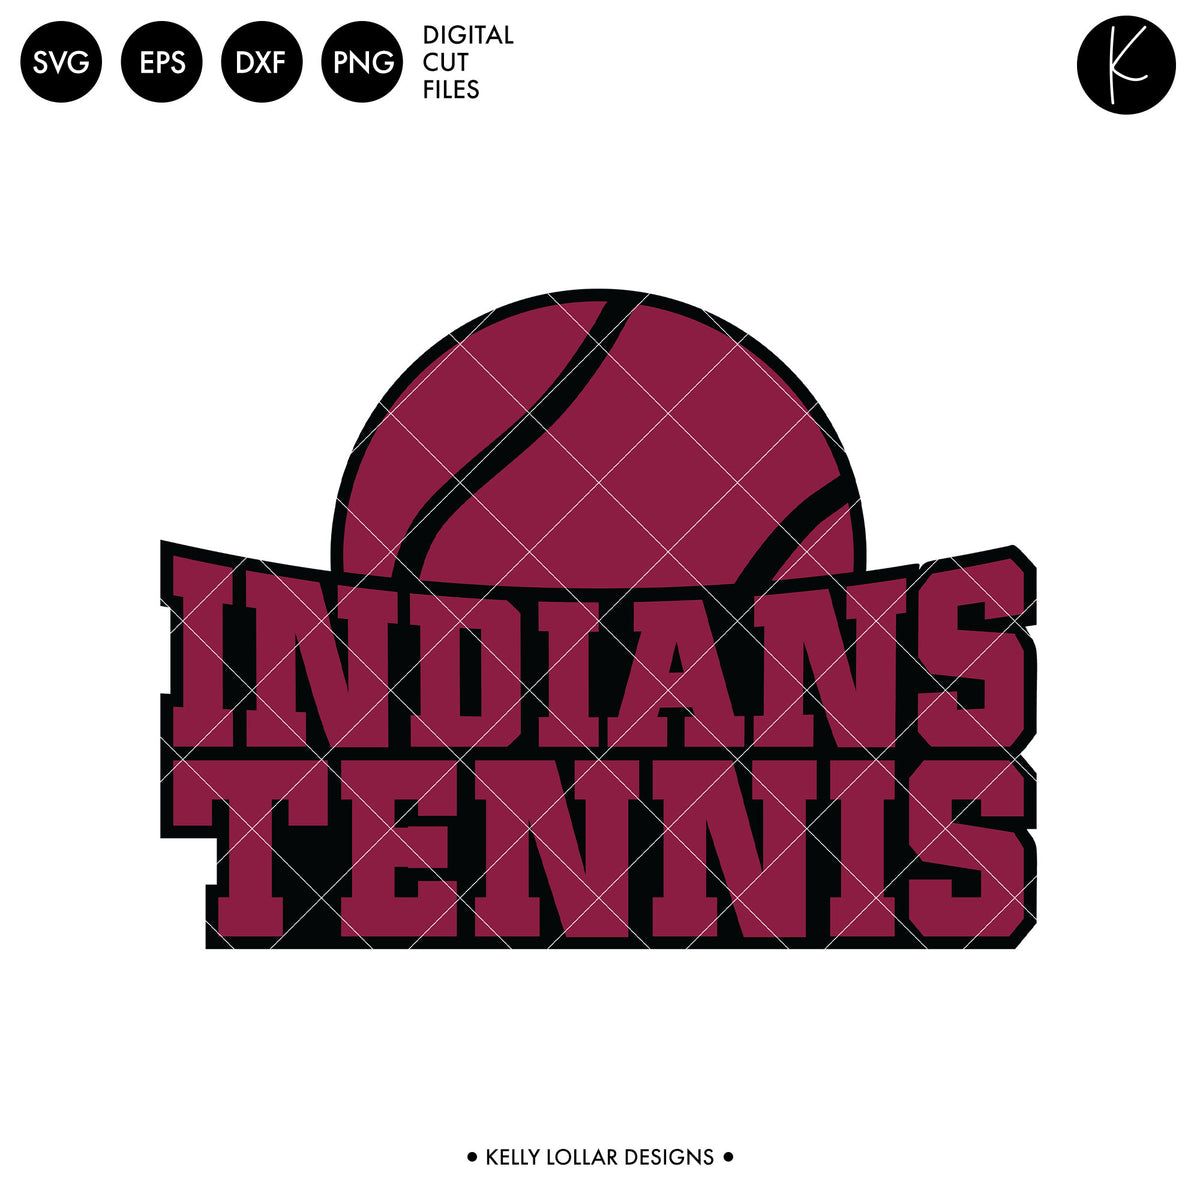 Indians Tennis Bundle | SVG DXF EPS PNG Cut Files